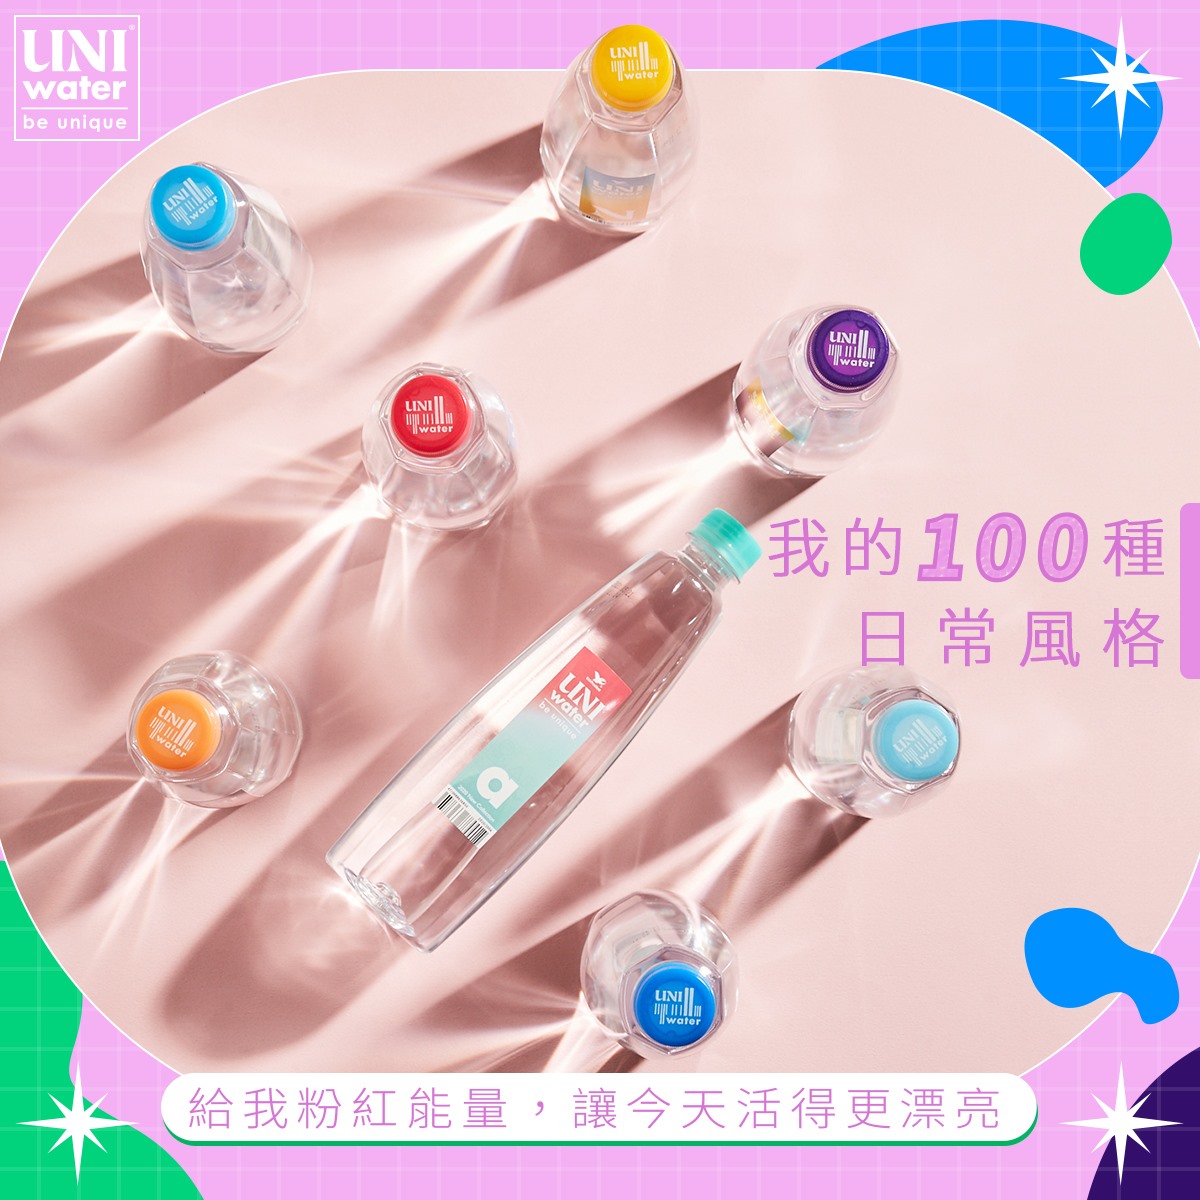 【統一】Uni water 純水 550ml&330ml (24瓶/箱) 瓶裝水